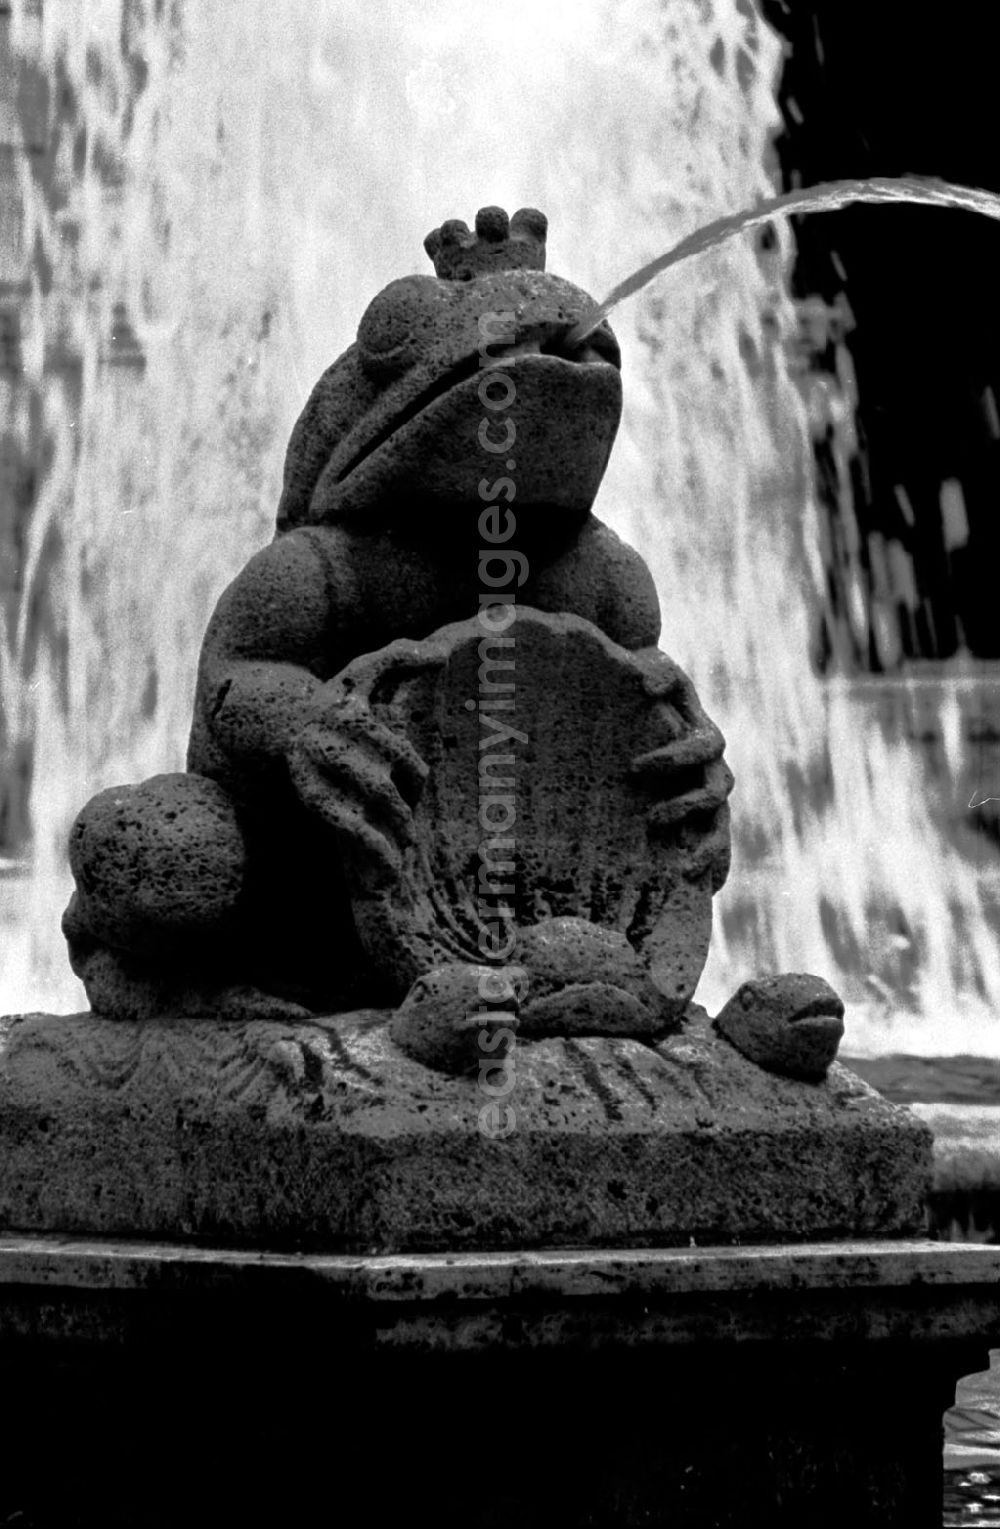 GDR image archive: Berlin-Friedrichshain - versch. Motive vom Märchenbrunnen in Friedrichshain 6/1989